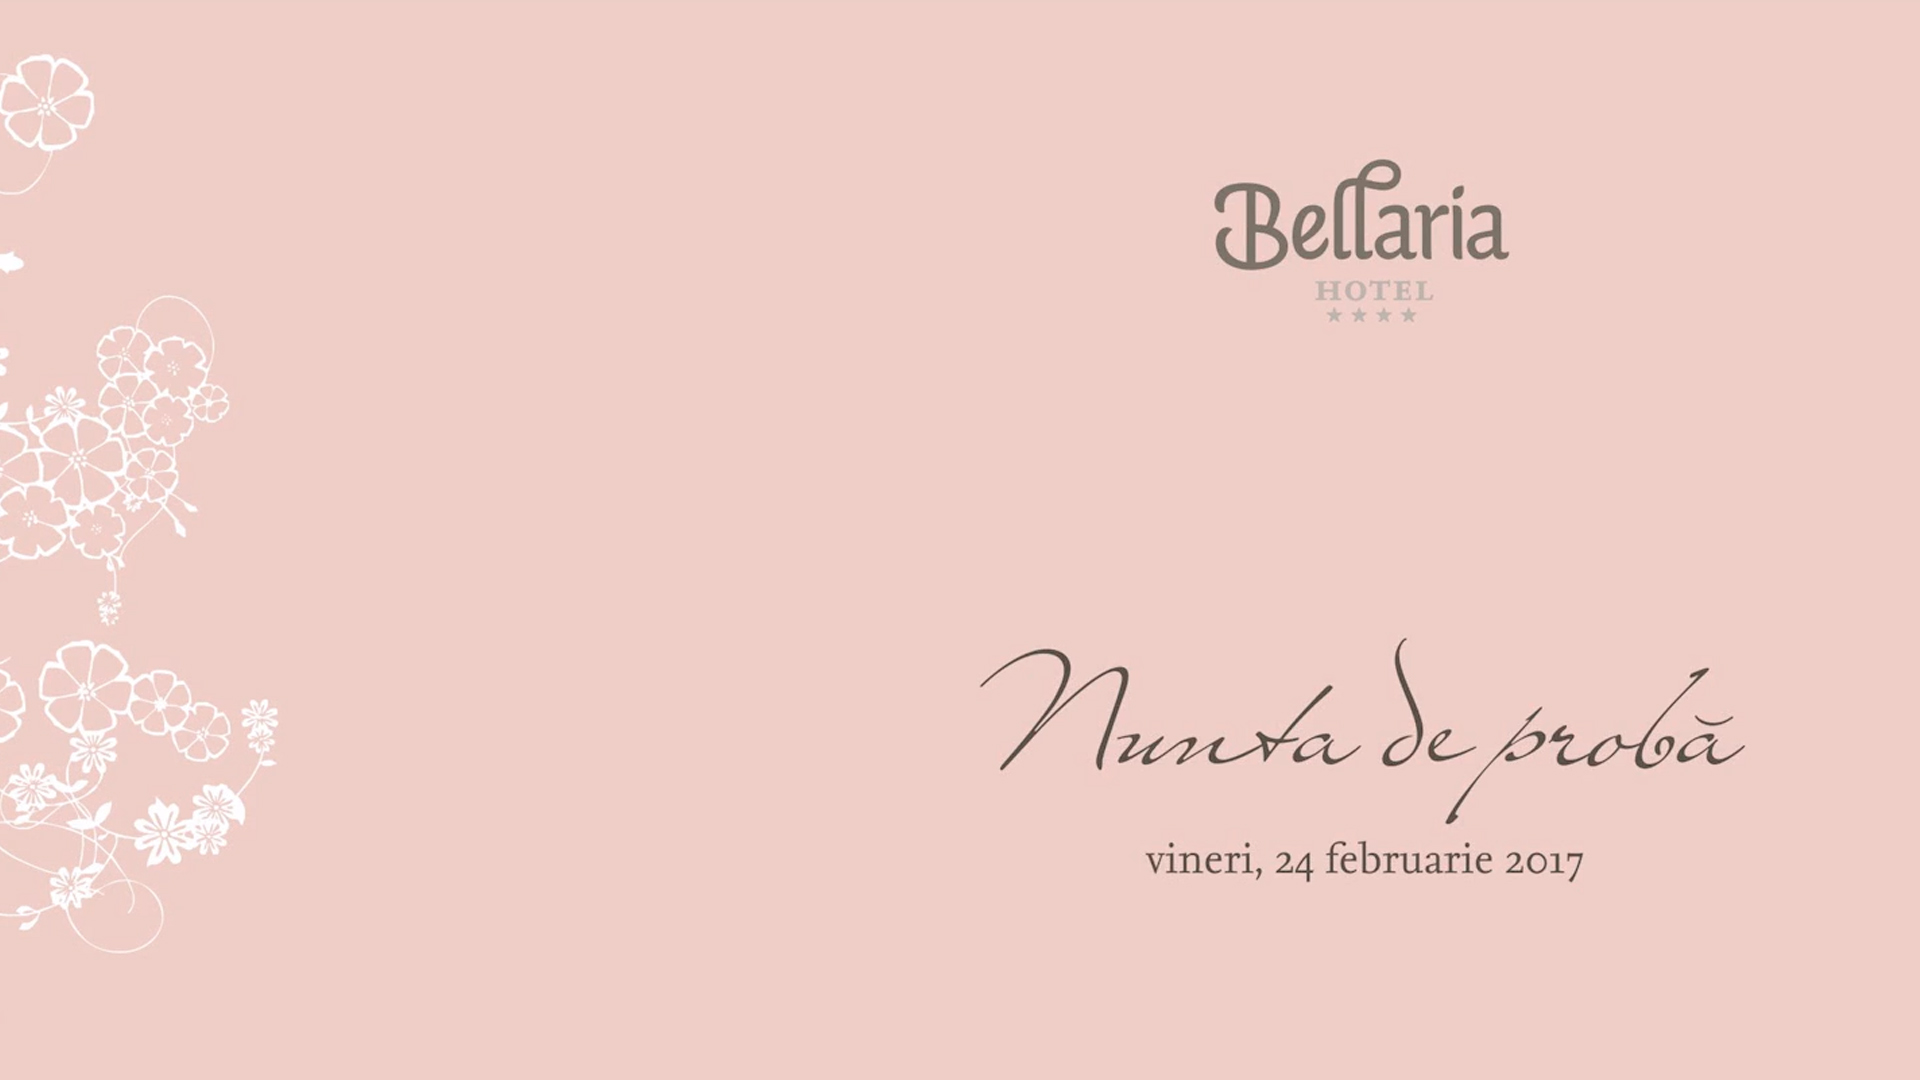 Bellaria – Nunta de proba 2017